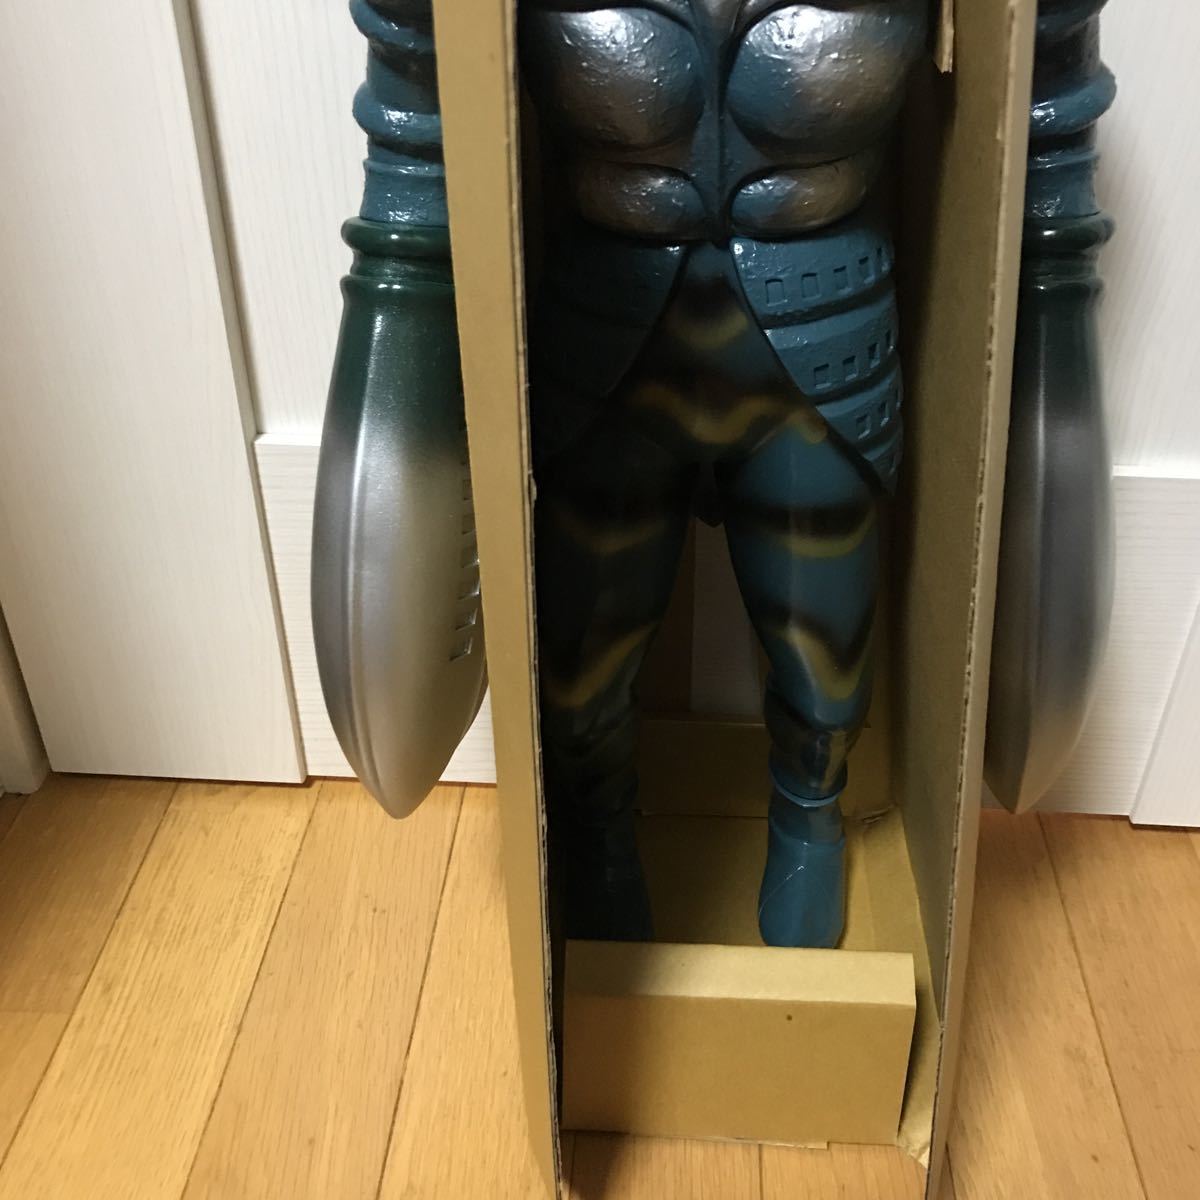 iotho[ не использовался ценный товар ] Ultraman ja Ian to шкала Baltan Seijin большой размер sofvi фигурка высота примерно 66cm